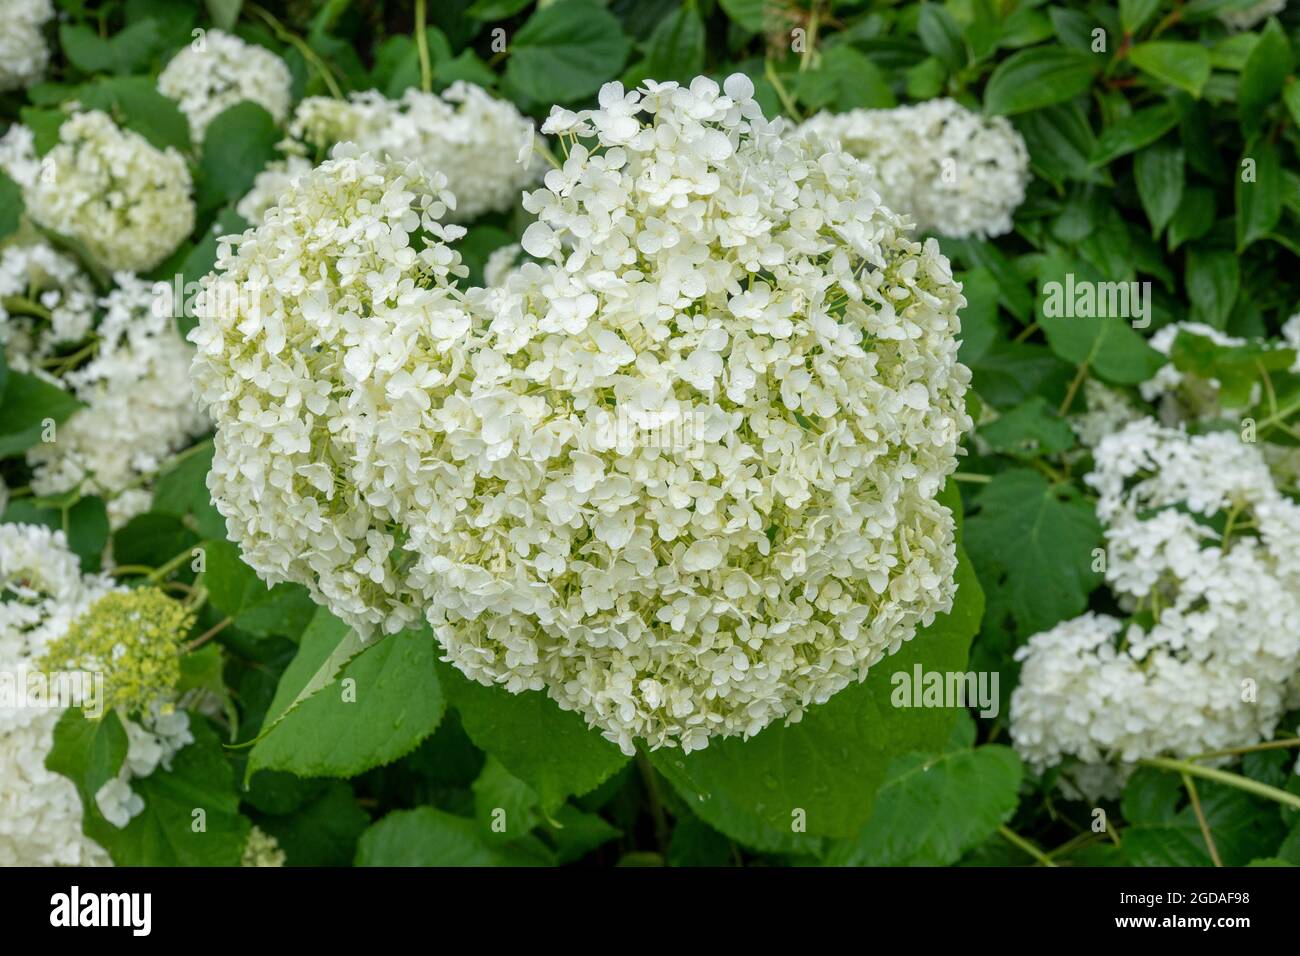 Titolo hydrangea arborsecens comunemente noto come hydrangea liscio selvaggio hydrangea sezabbad o fiore di pecora Foto Stock